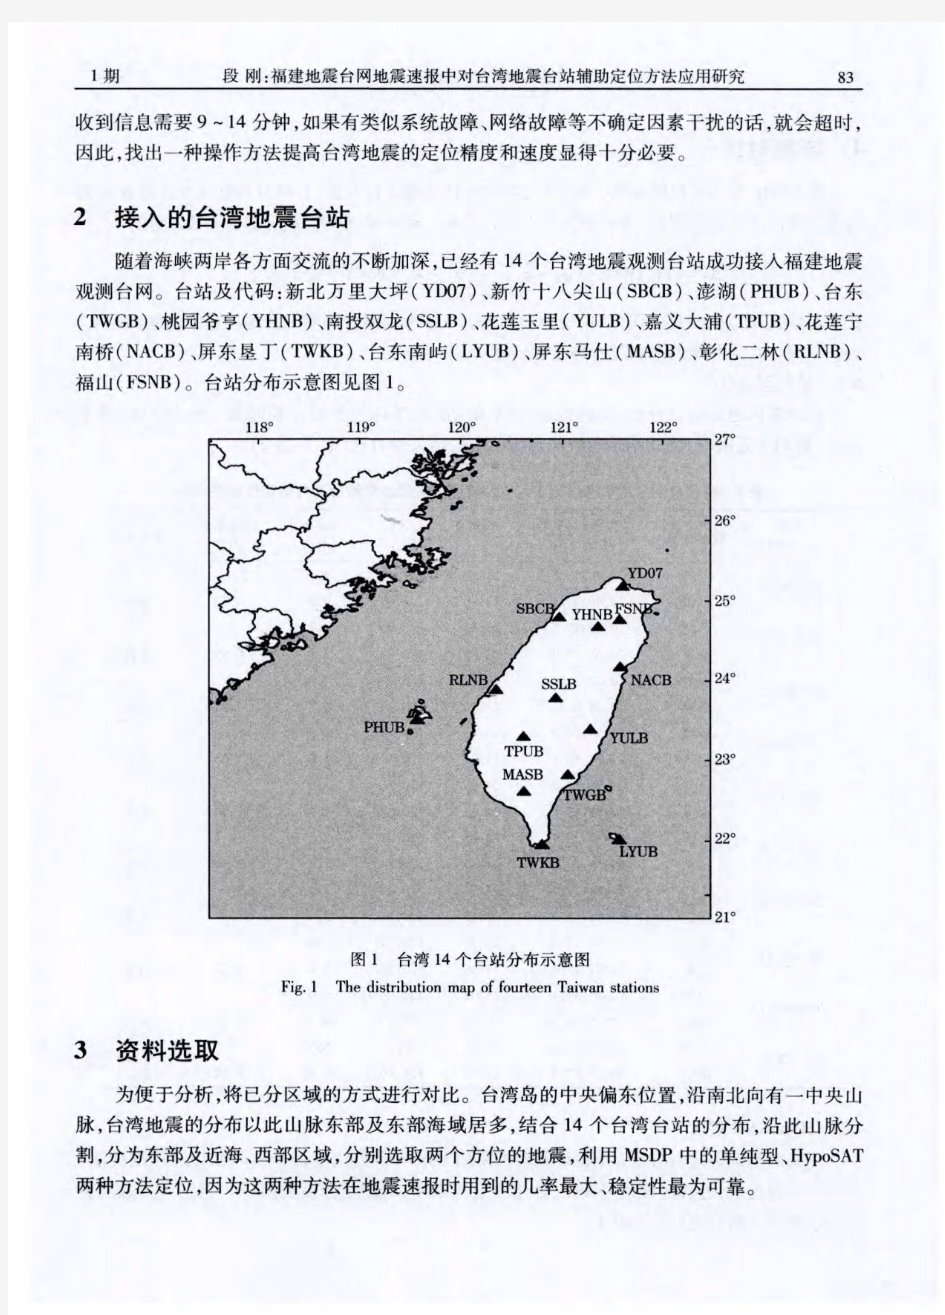 福建地震台网地震速报中对台湾地震台站辅助定位方法应用研究